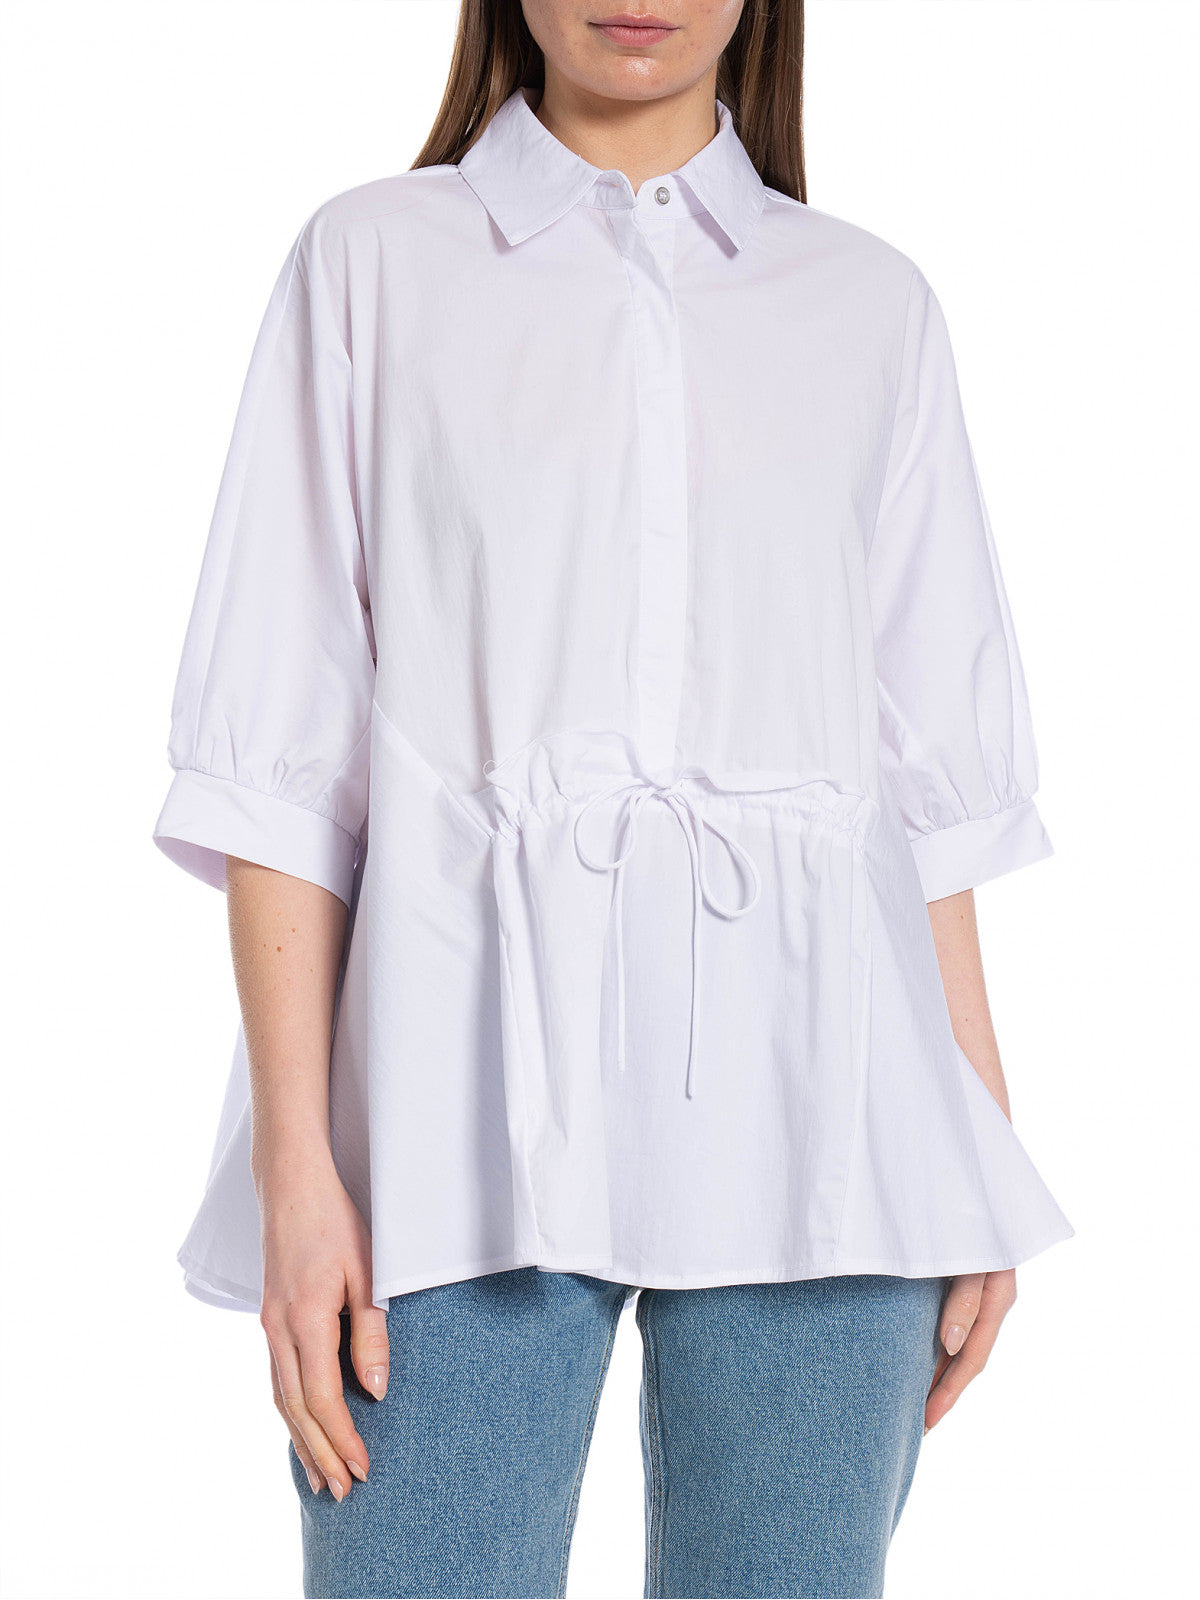 Co’couture cotton crisp wing blouse